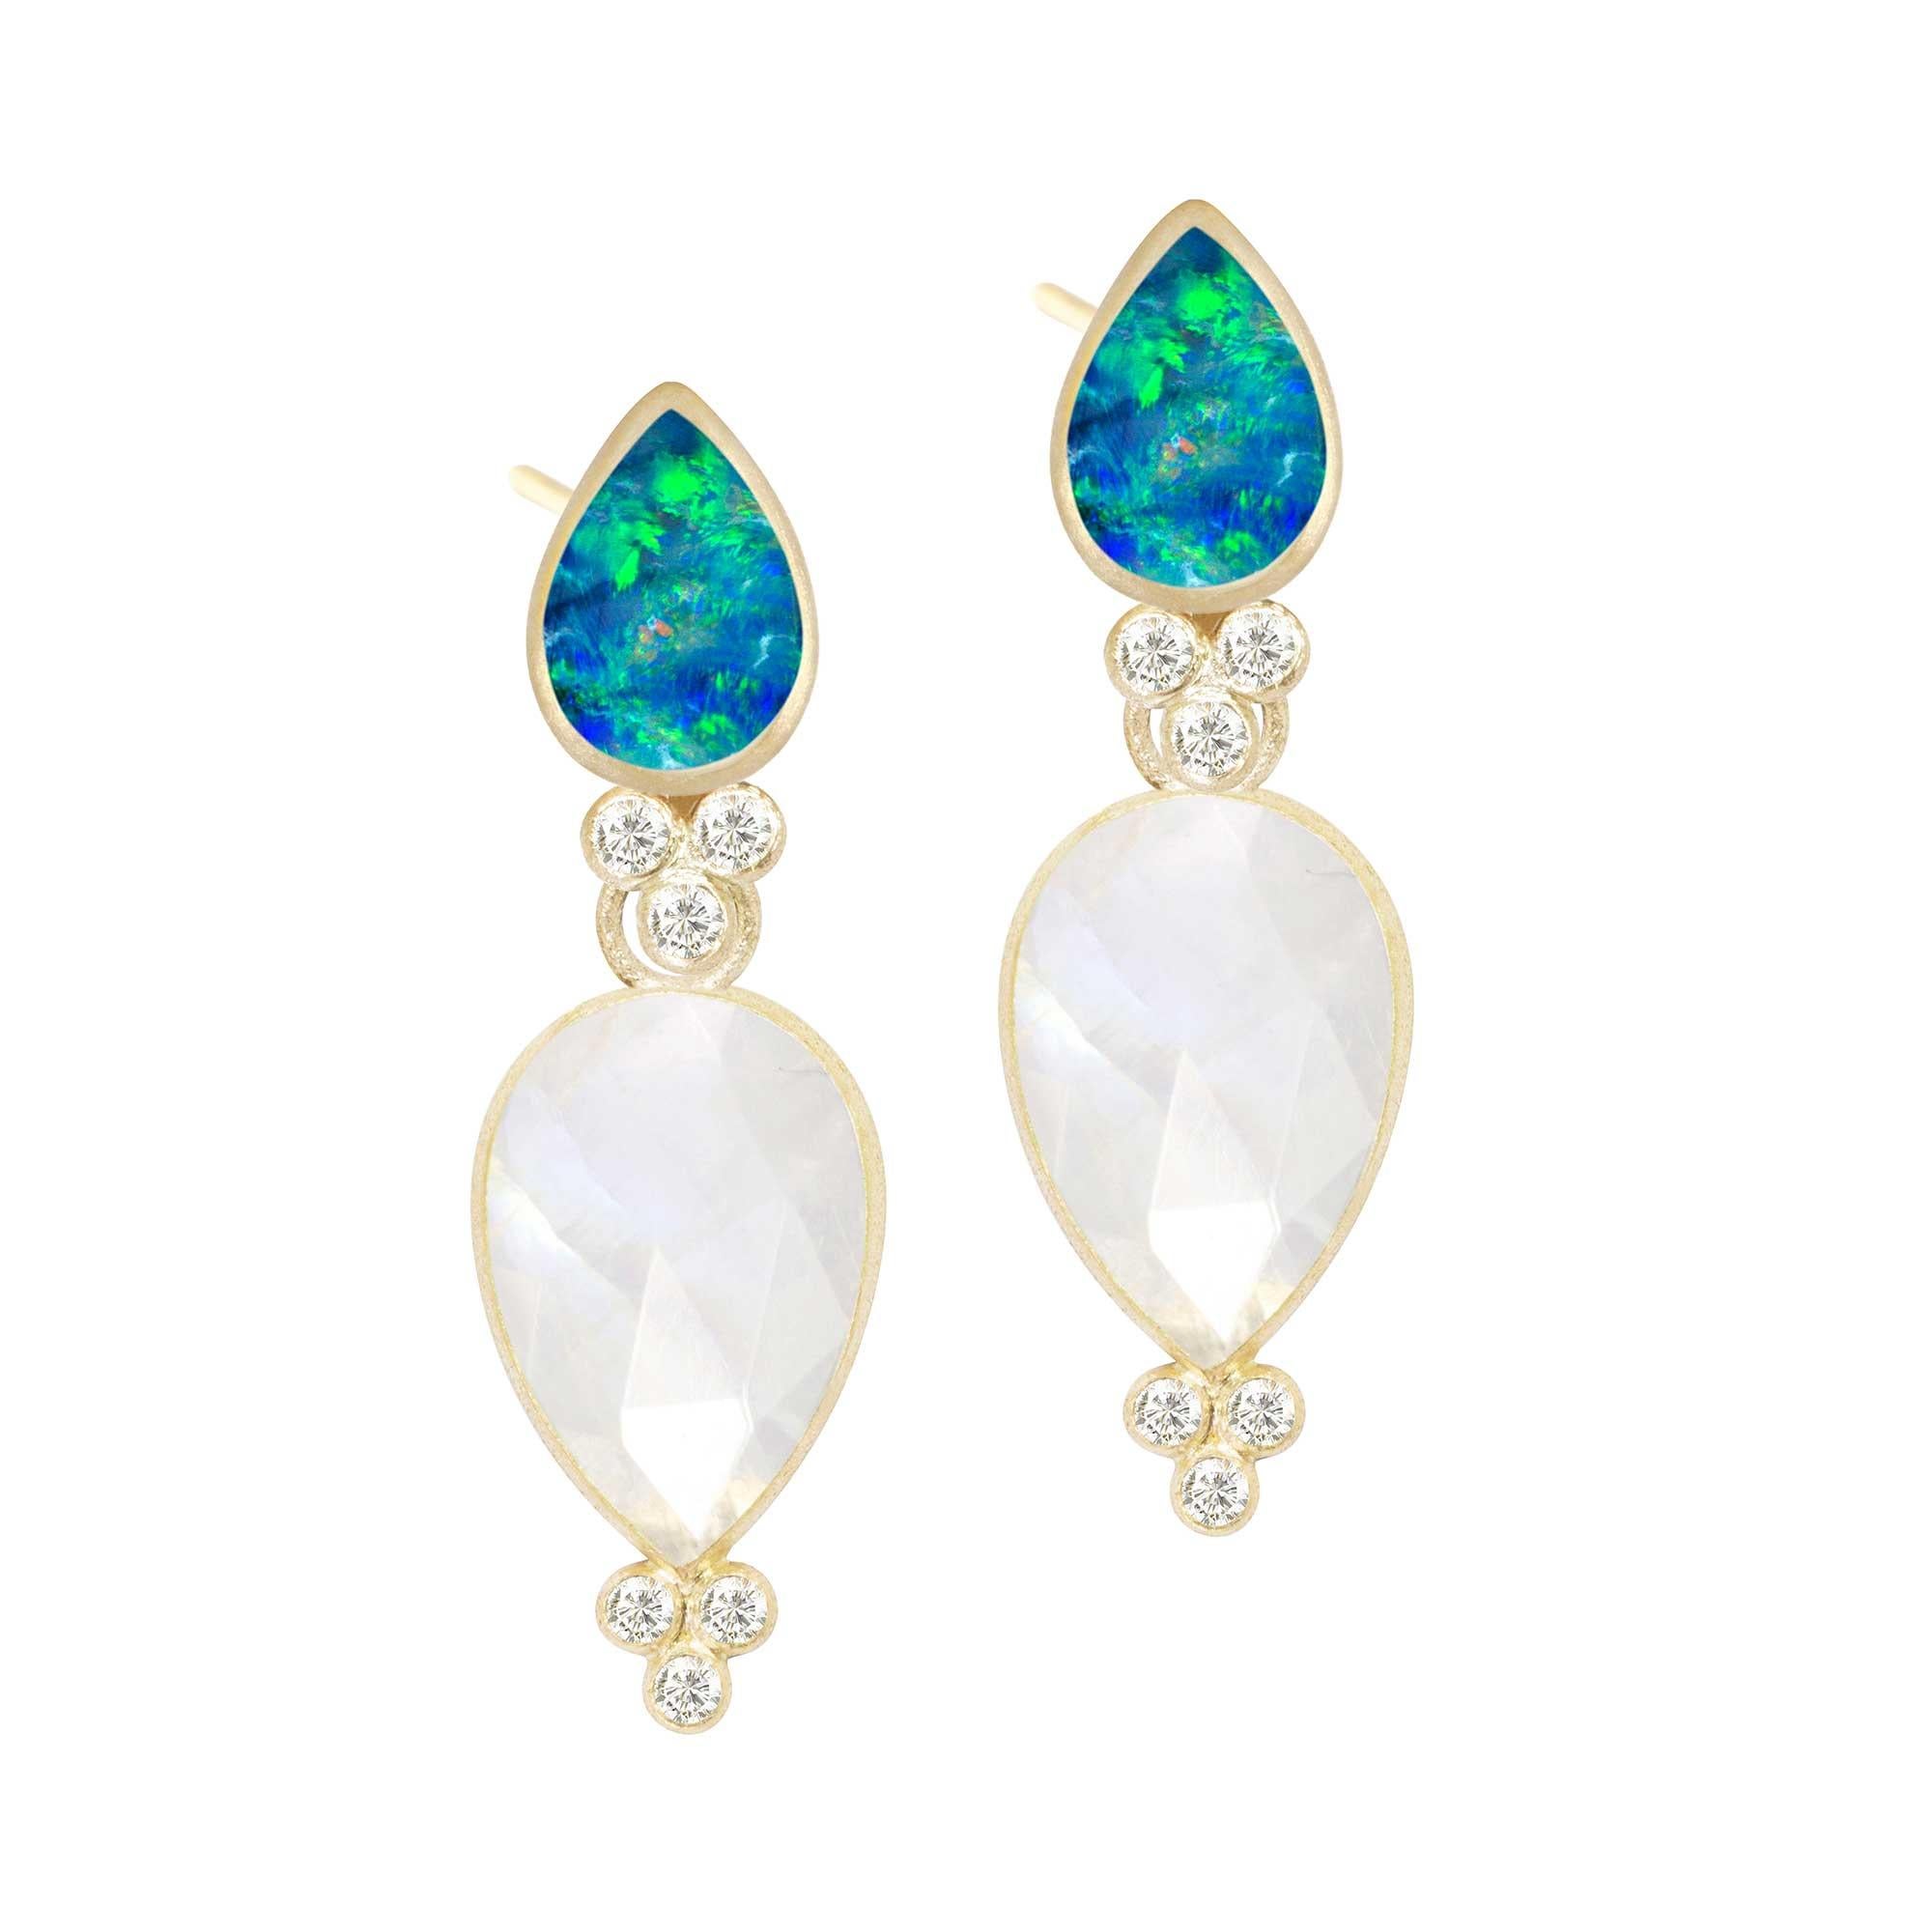 Die diamantbesetzten goldenen Ohrstecker Lilly mit Opal in Lünettenfassung sind schlicht und elegant und ein sehr femininer Stil, den Sie jeden Tag tragen können.
Der reiche, königliche Mondstein in einer blütenblattähnlichen Birnenform lässt die